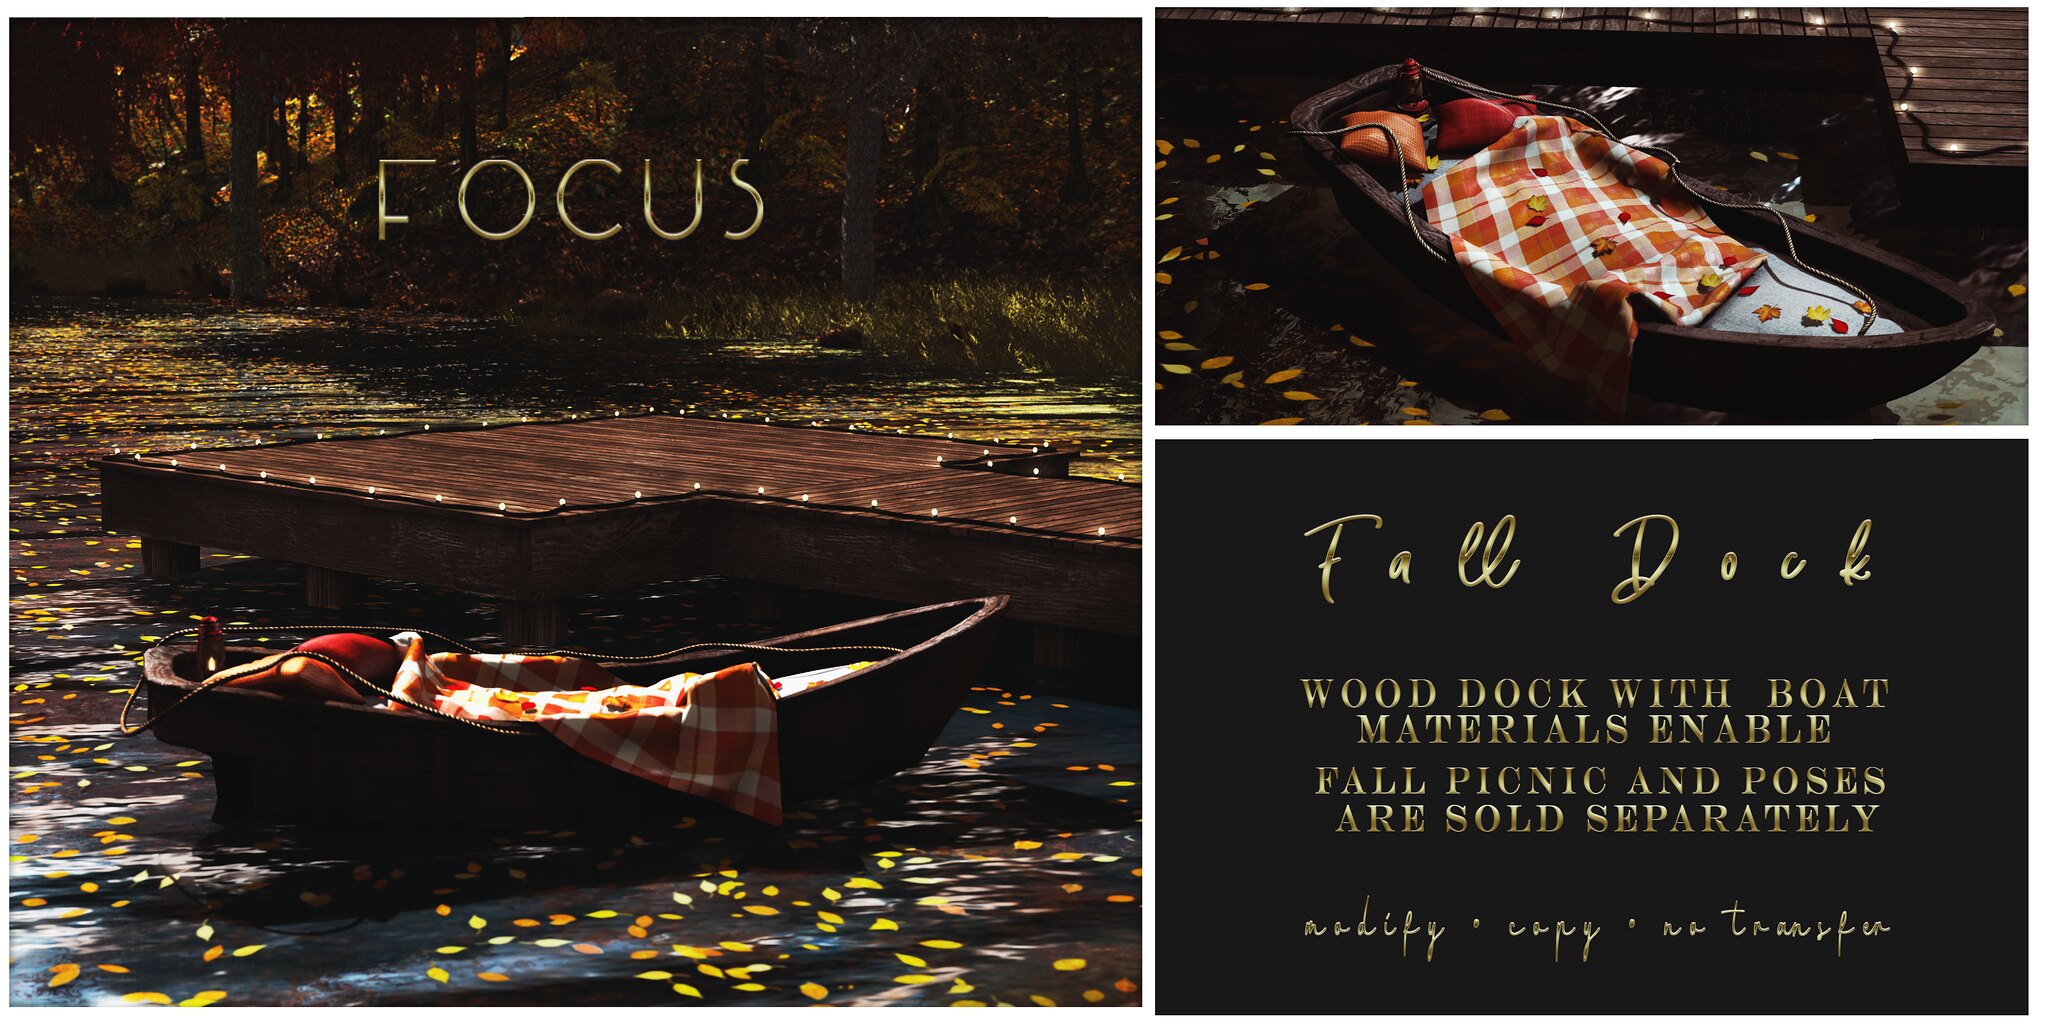 Focus – Fall Dock & Fall Picnic